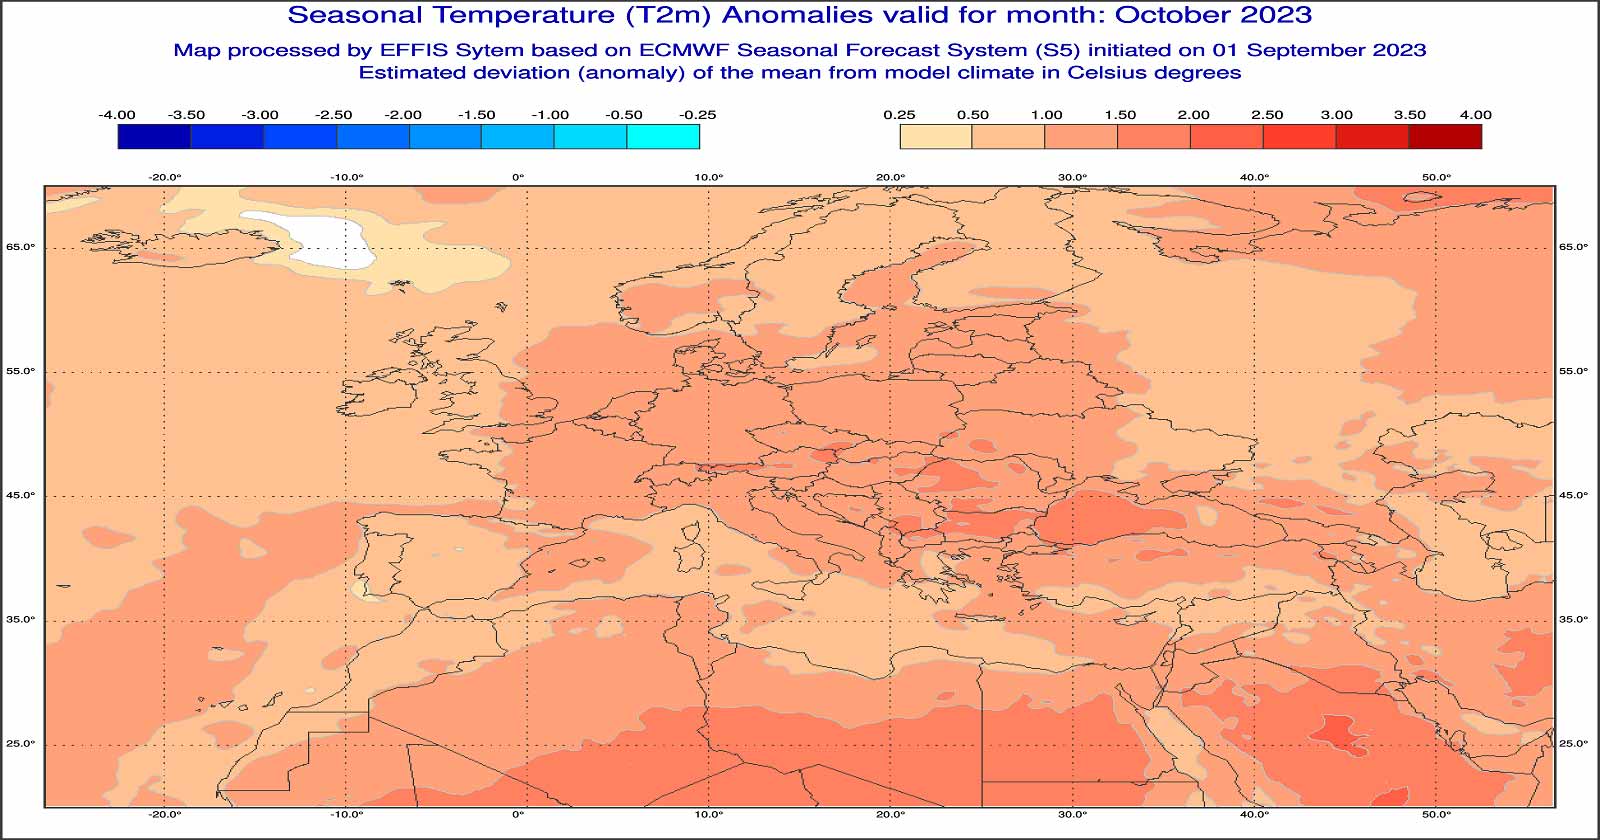 Anomalie di temperatura previste dal modello europeo per ottobre 2023 - effis.jrc.ec.europa.eu.eu